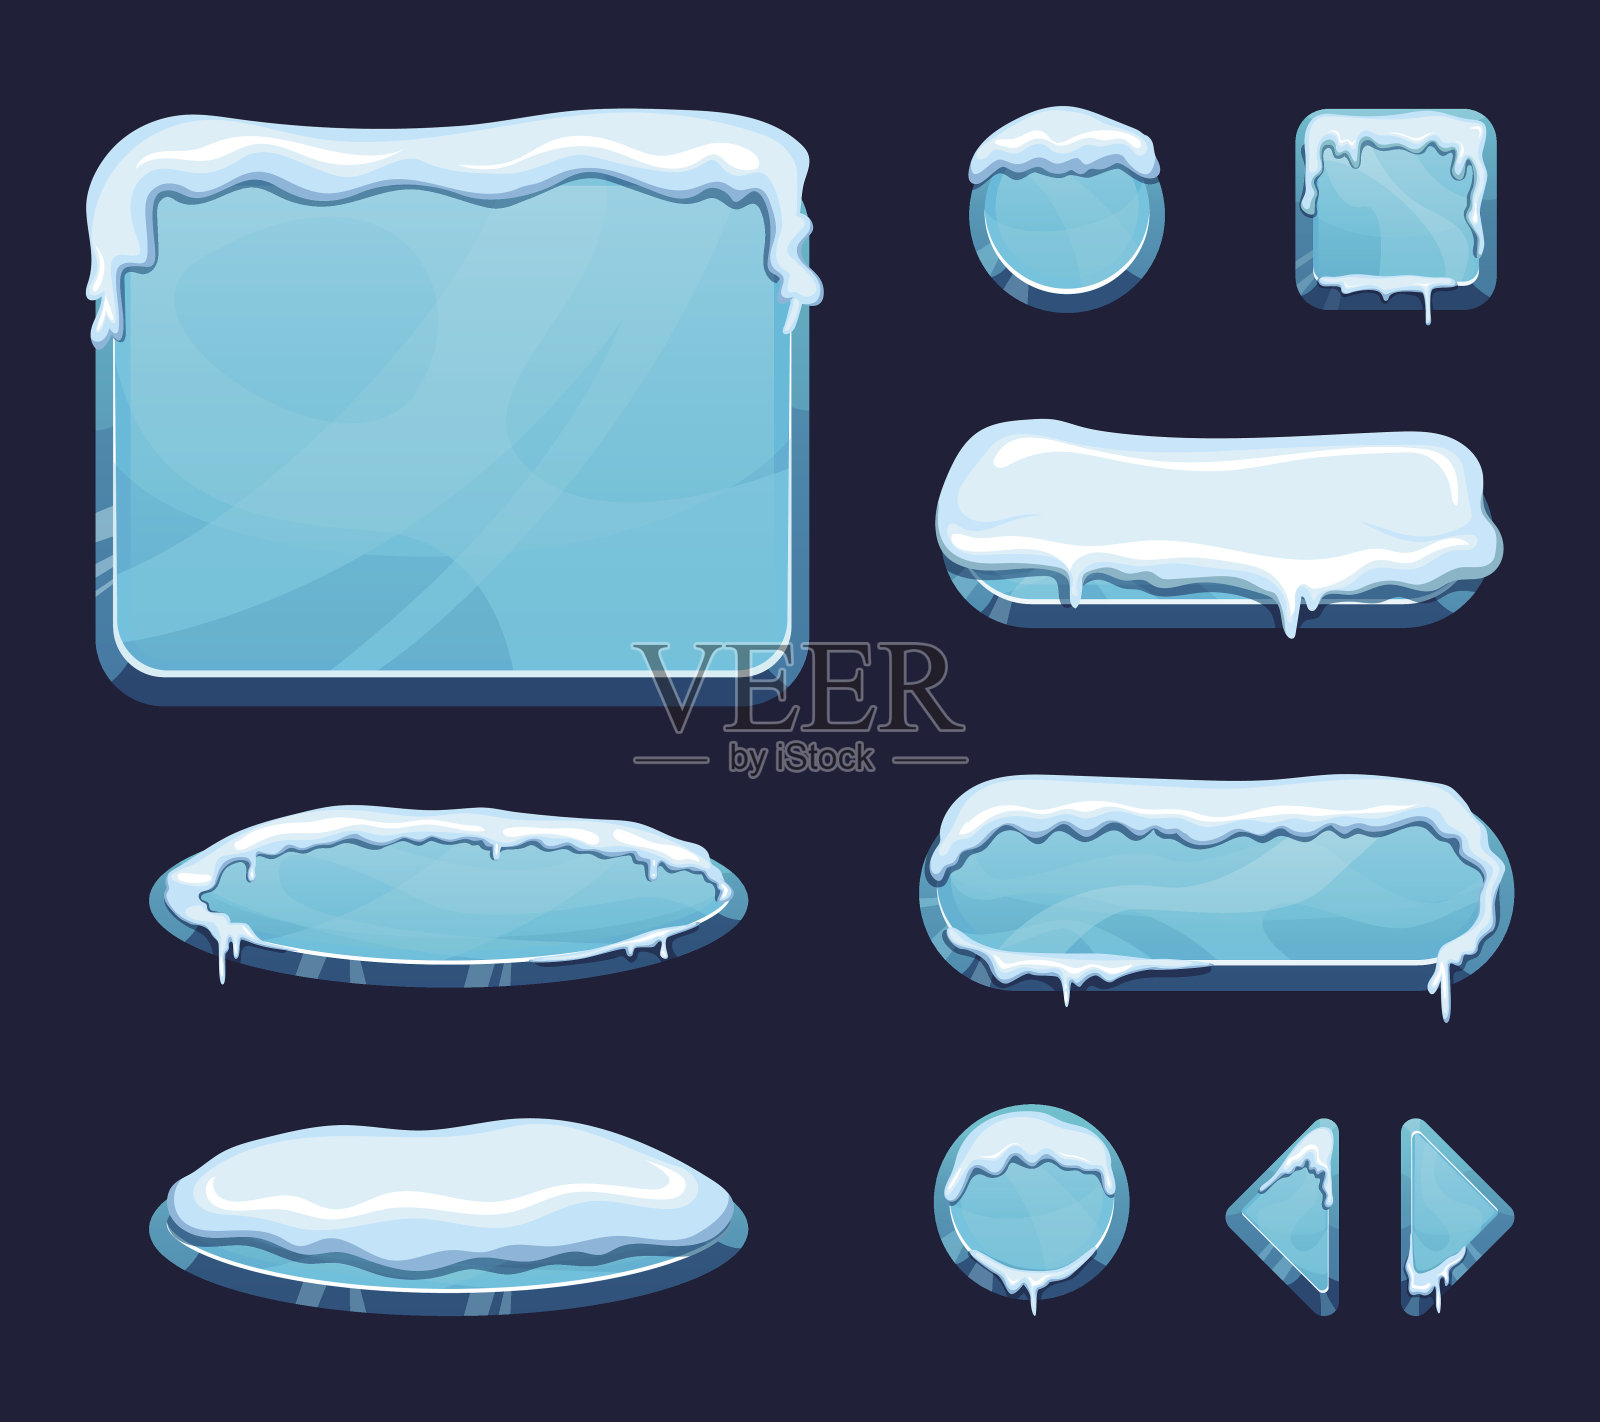 卡通风格的手机游戏ui模板。有光泽的按钮和面板与冰和雪帽插画图片素材